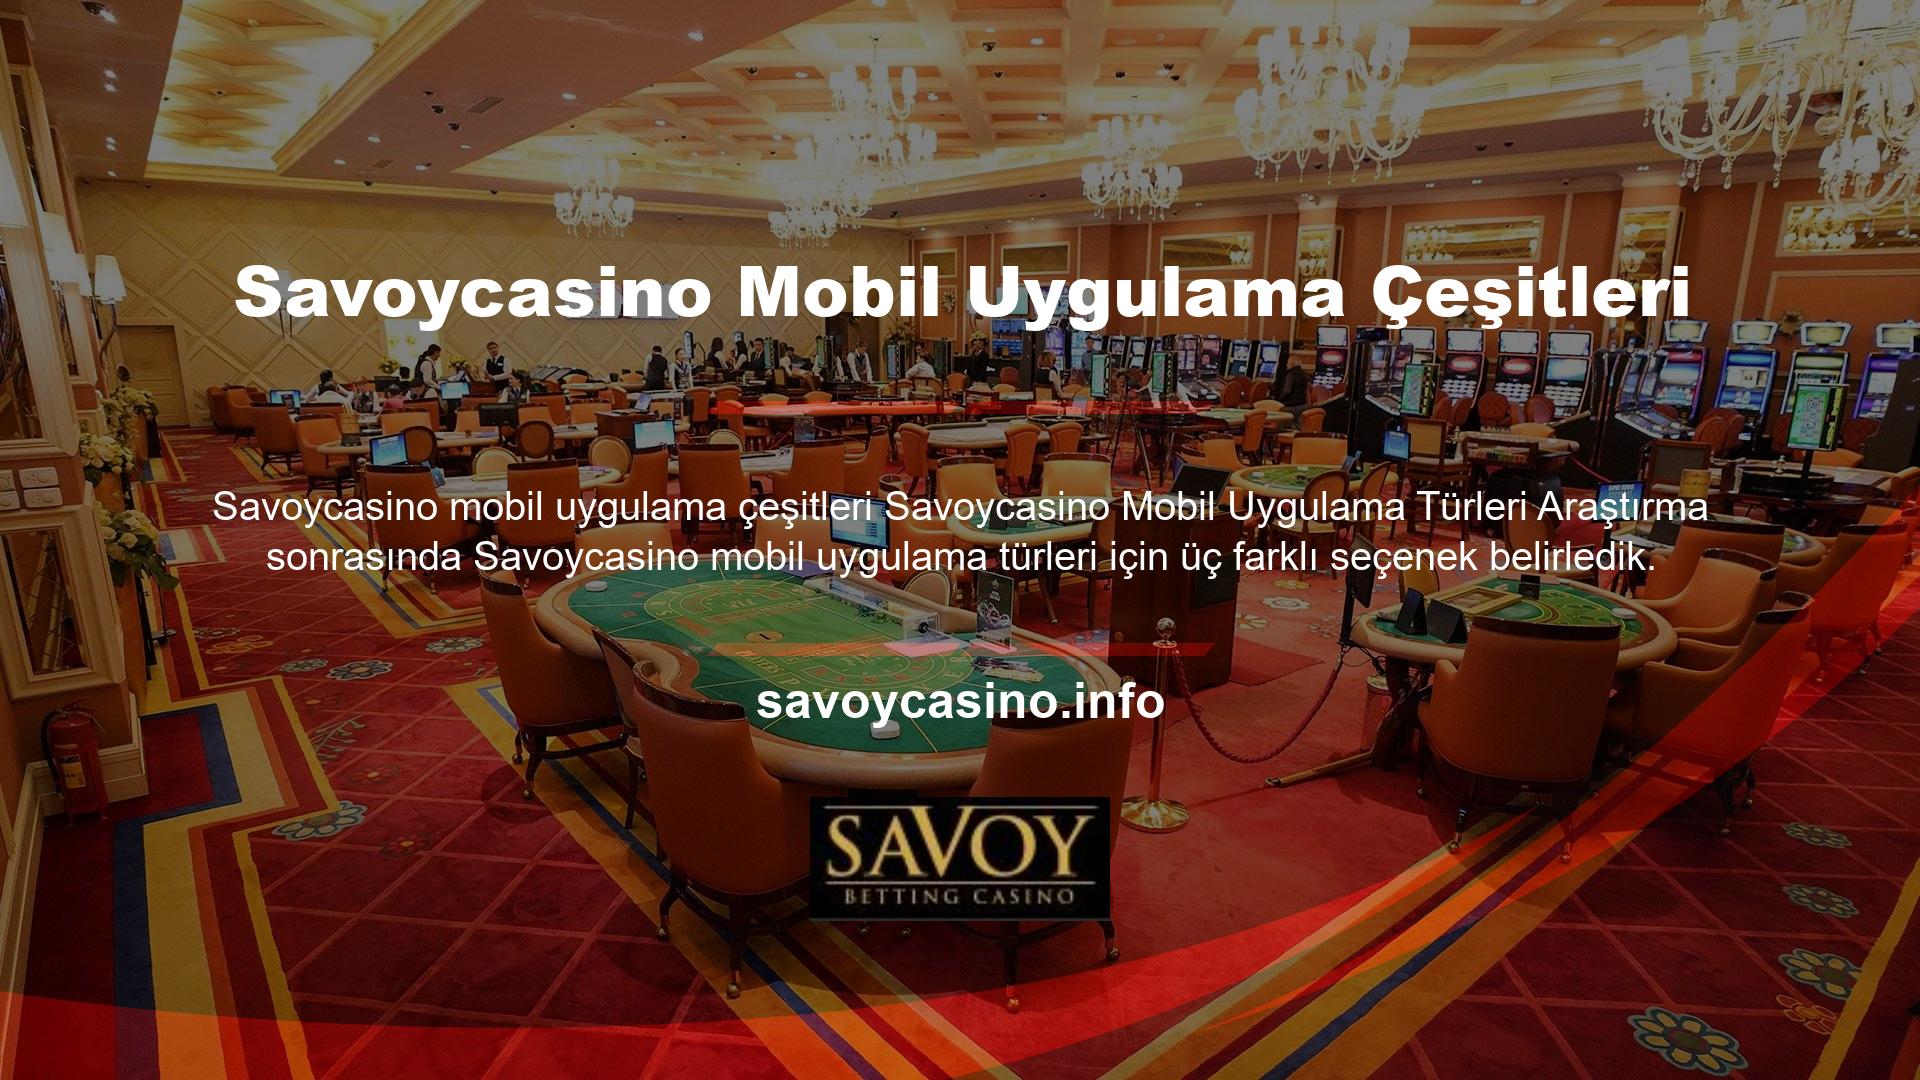 Savoycasino iPhone uygulaması, iOS işletim sistemine sahip cep telefonu sahibi kullanıcılara yöneliktir